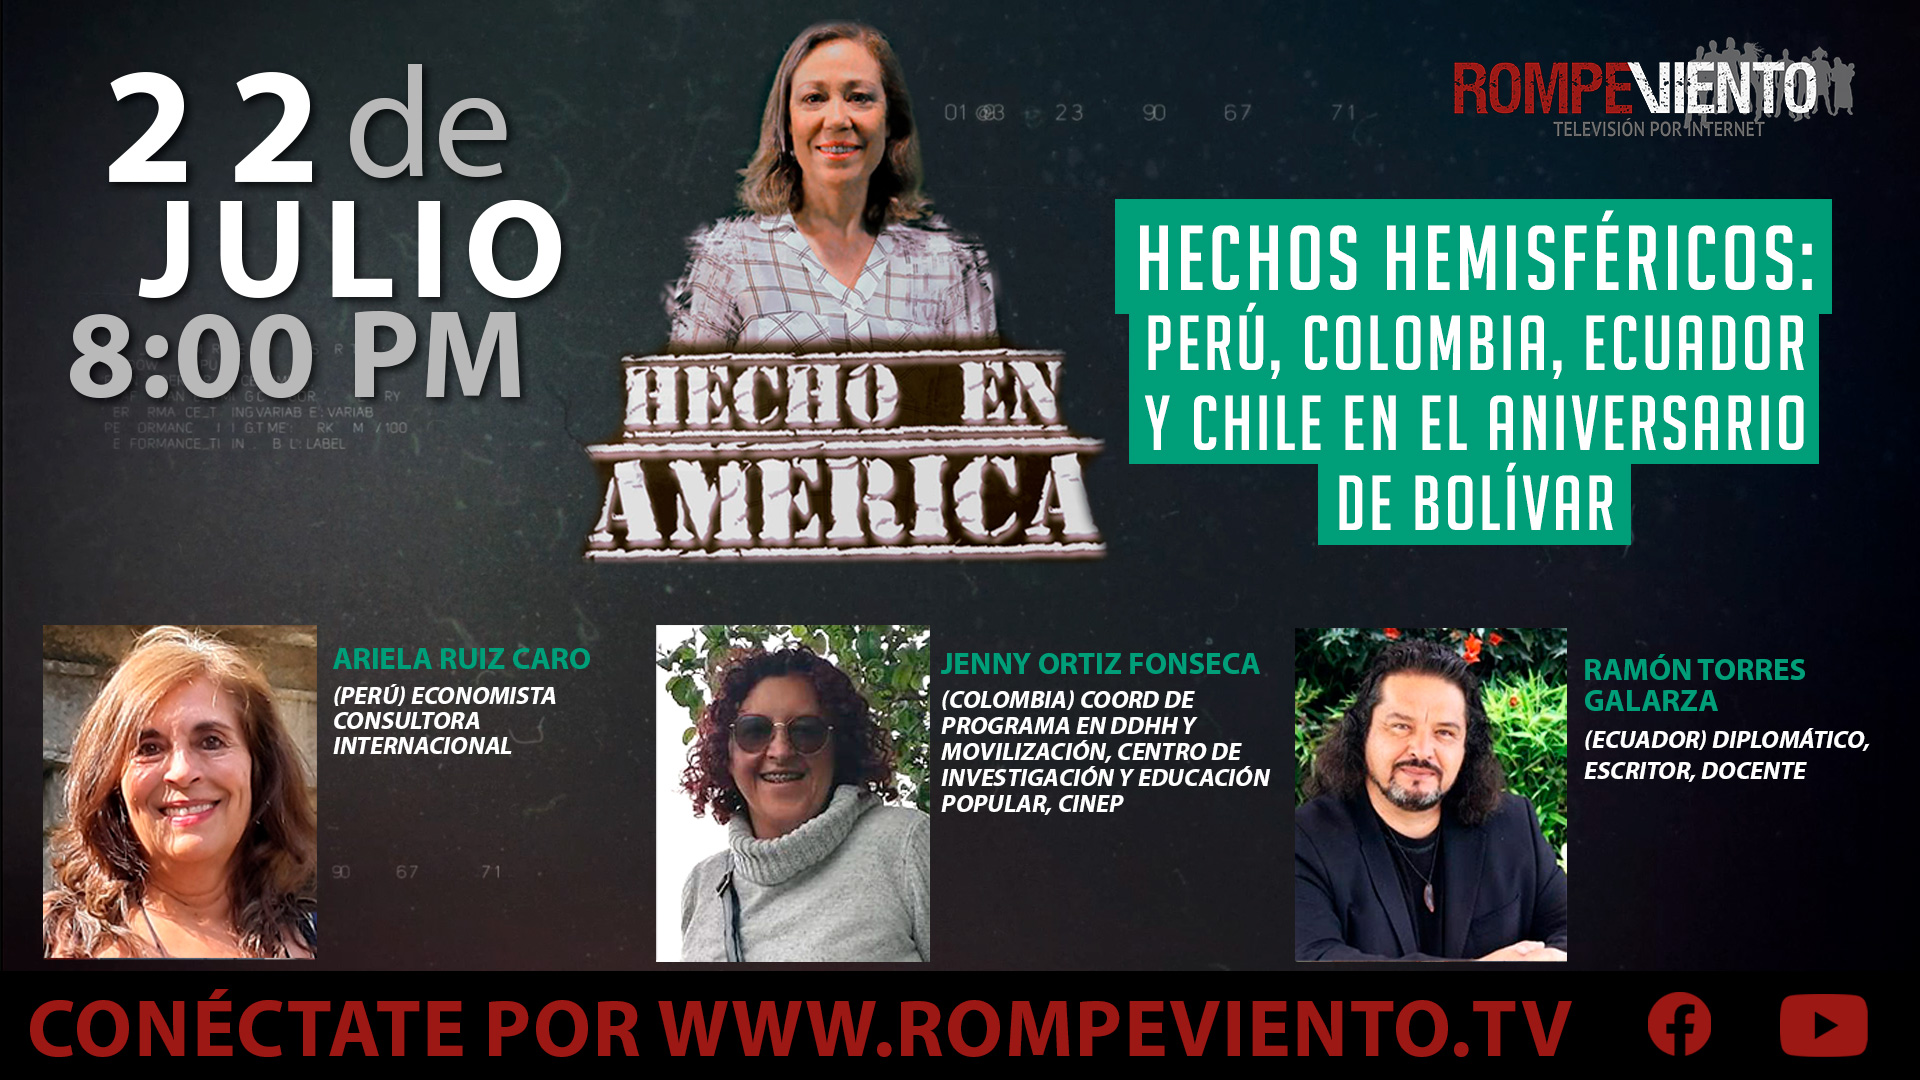 Hechos Hemisféricos: Perú, Colombia, Ecuador y Chile en el Aniversario de Bolívar - Hecho en América